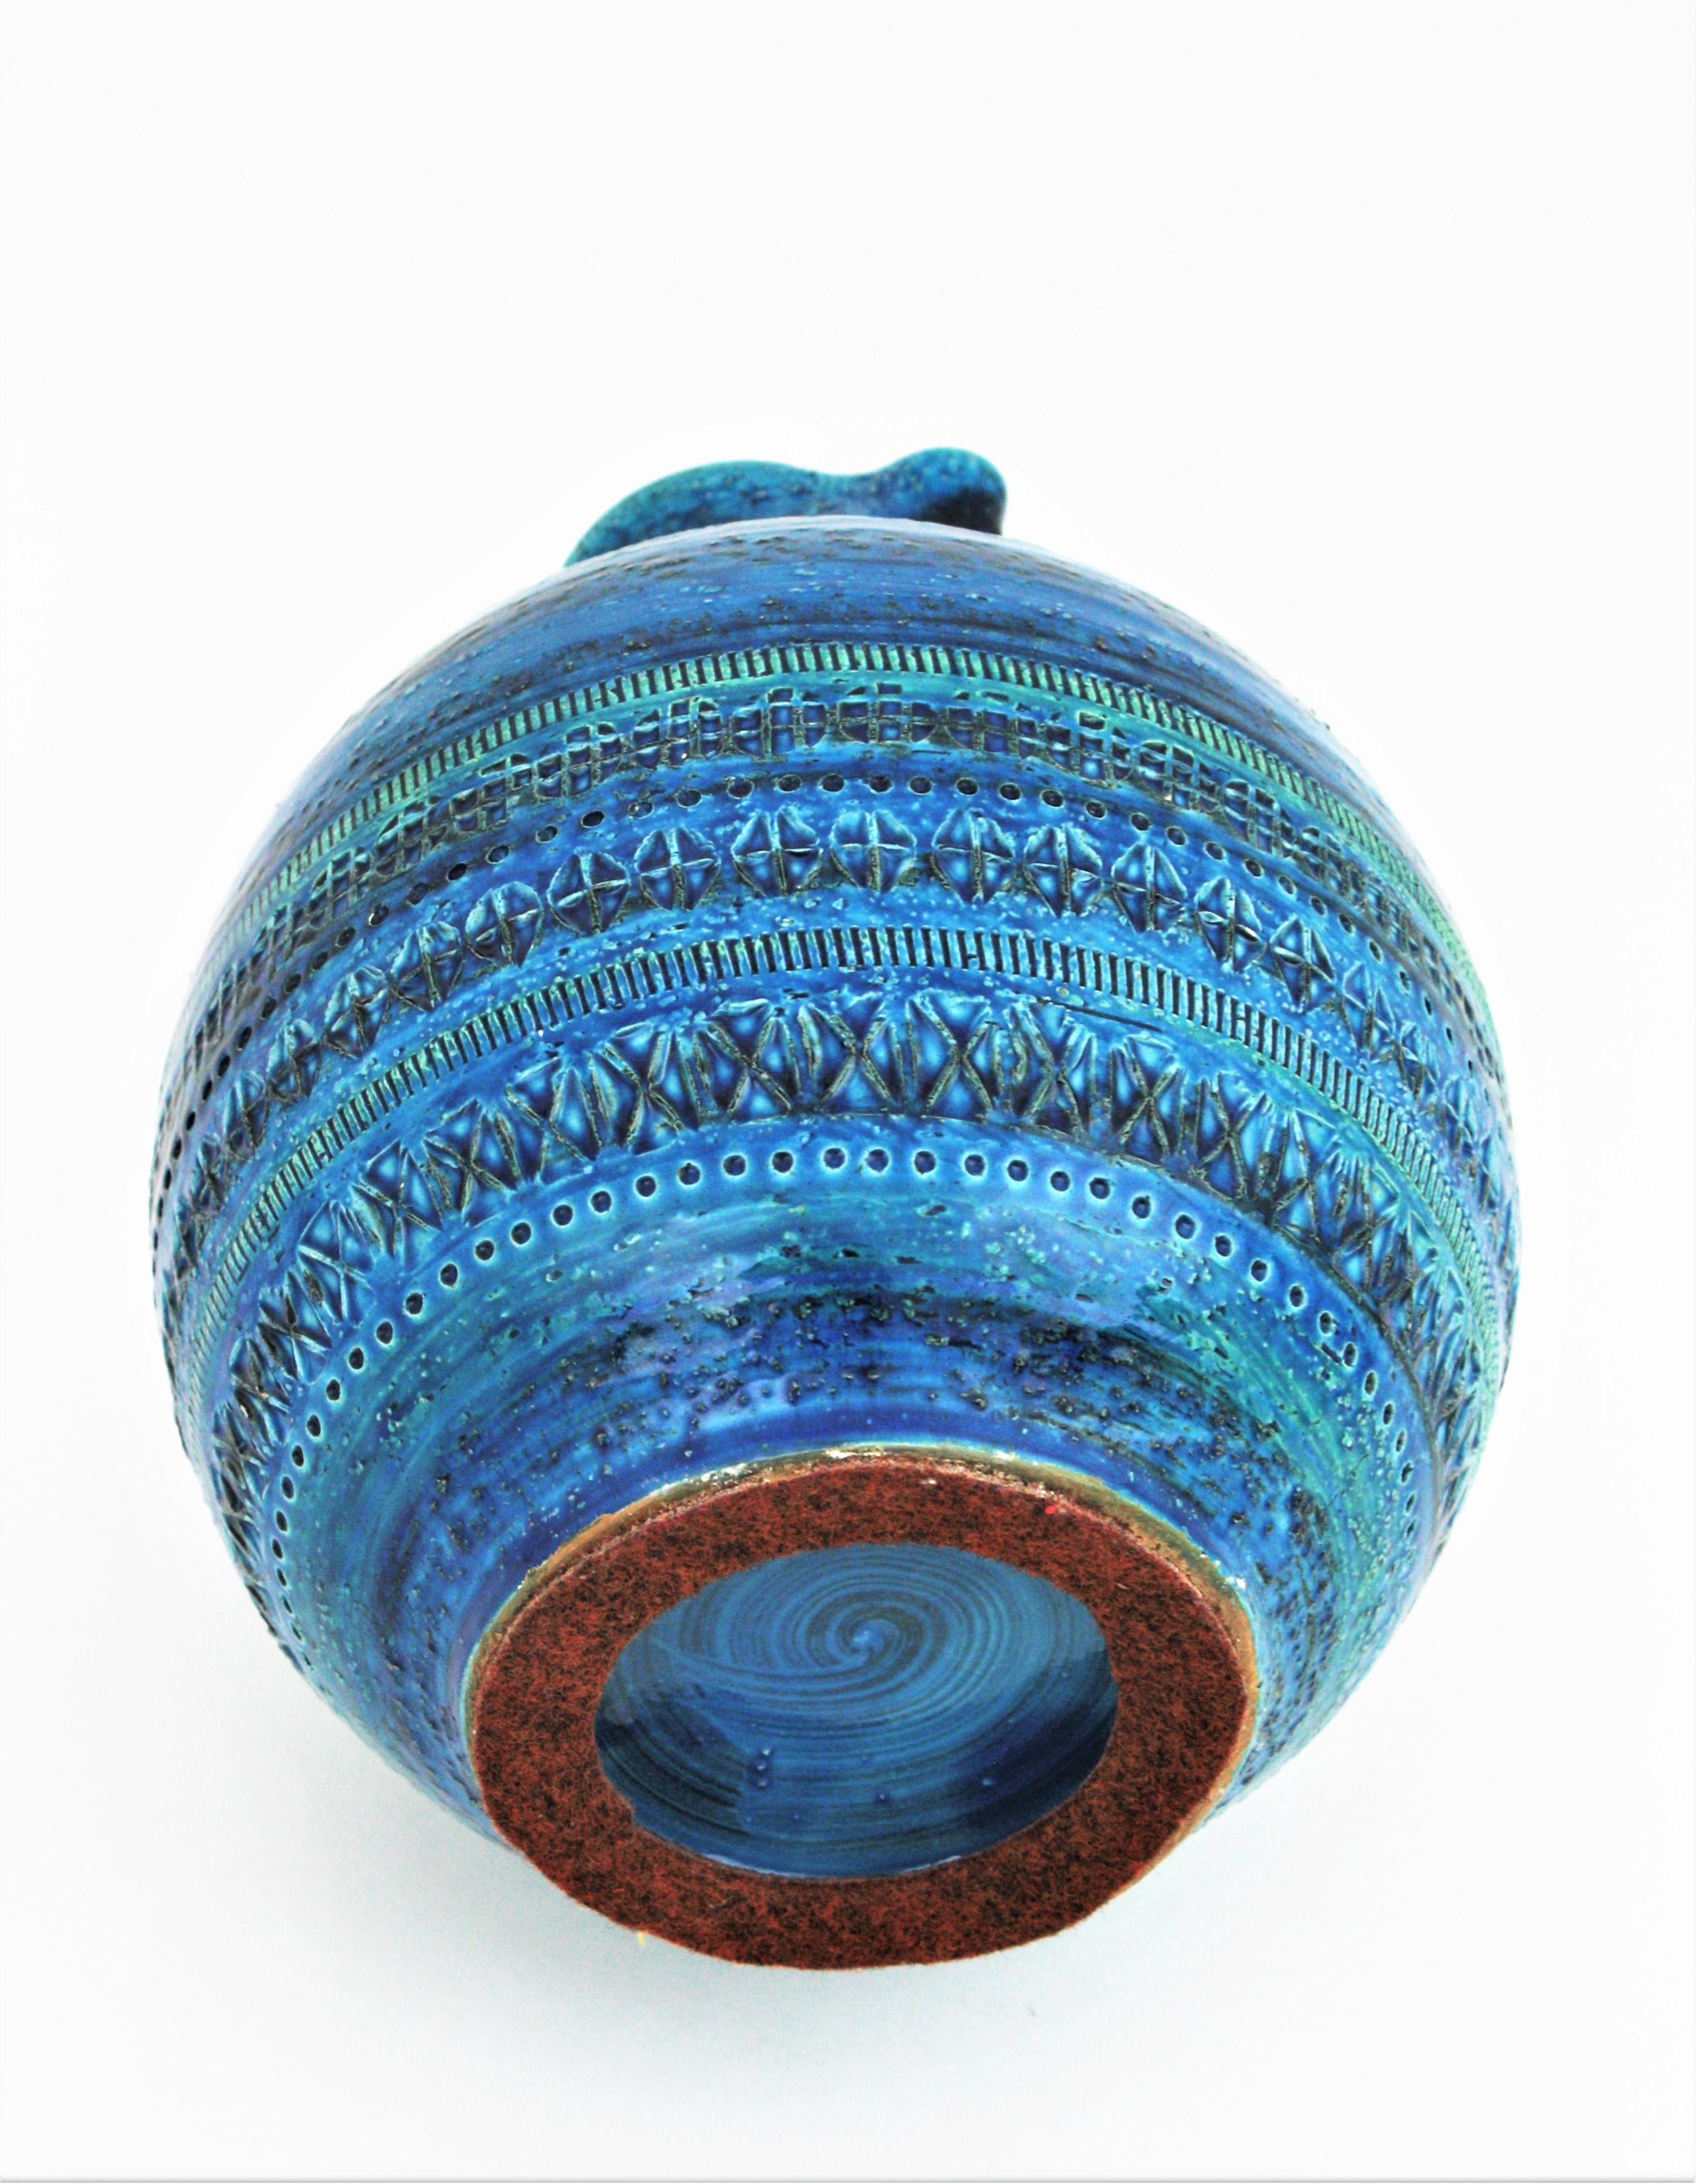 Aldo Londi Bitossi Rimini Blue  Glazed Ceramic XL Jug Vase For Sale 3